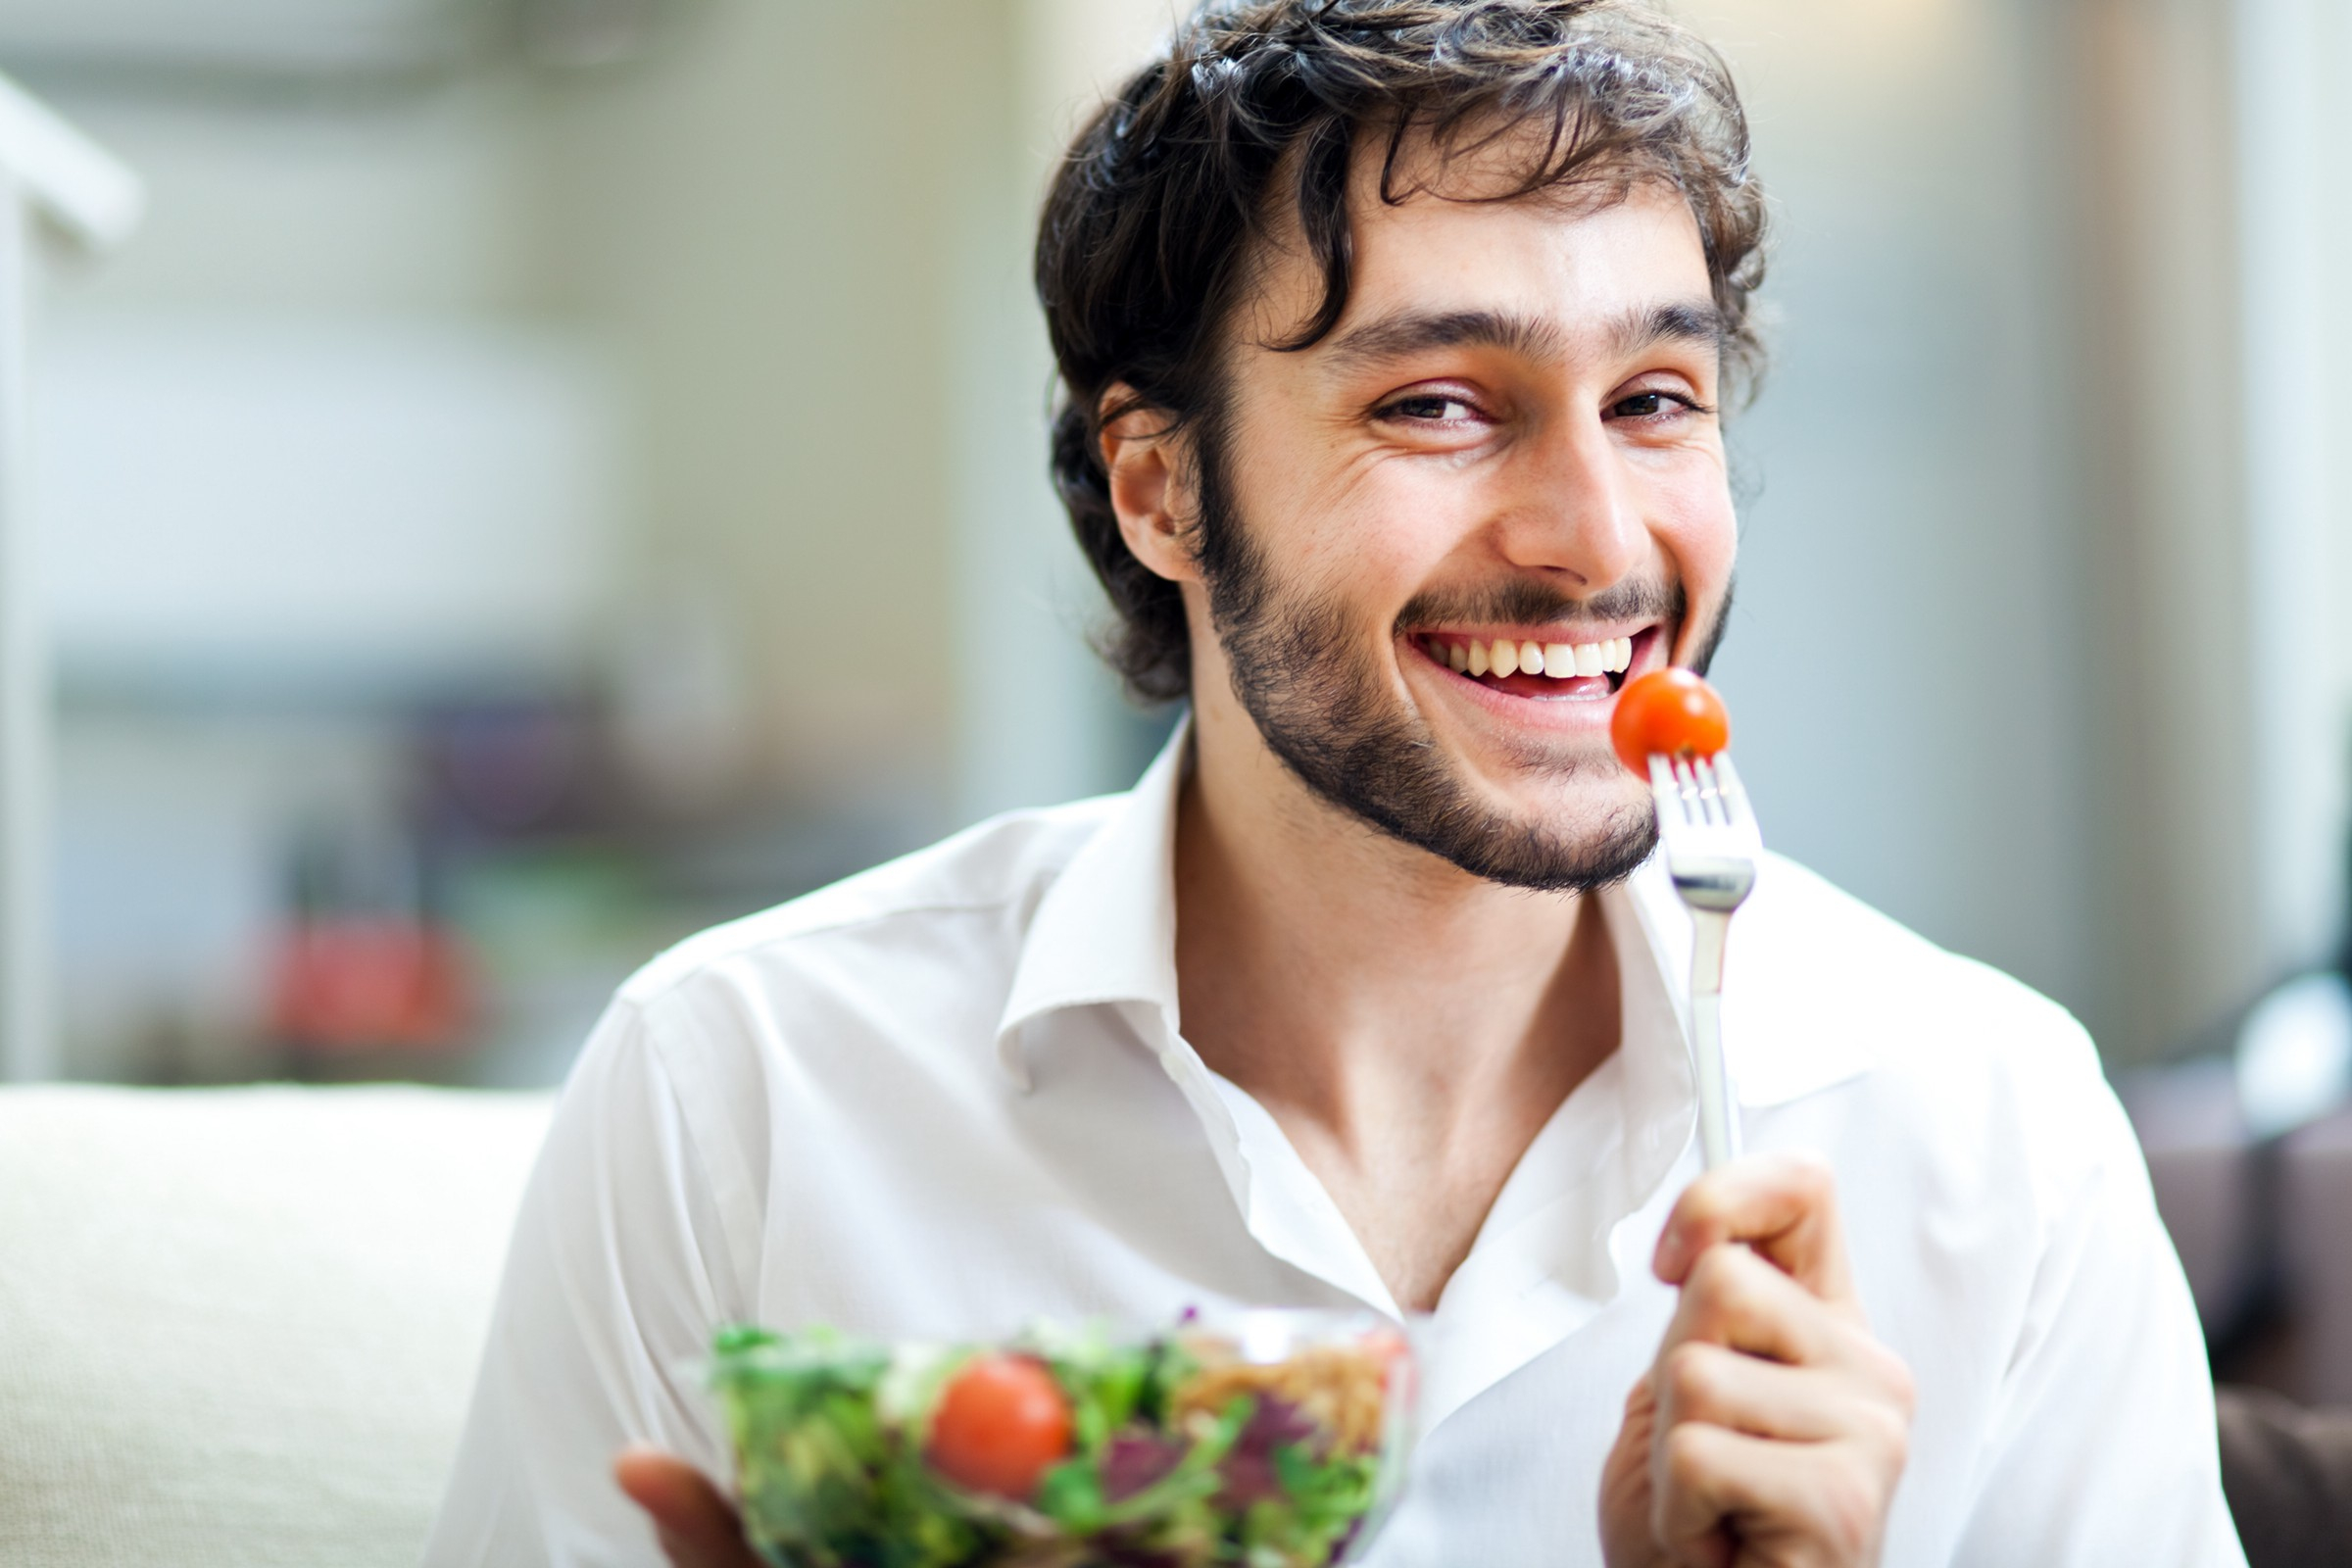 Диетологи назвали полезные для мужчин продукты питания